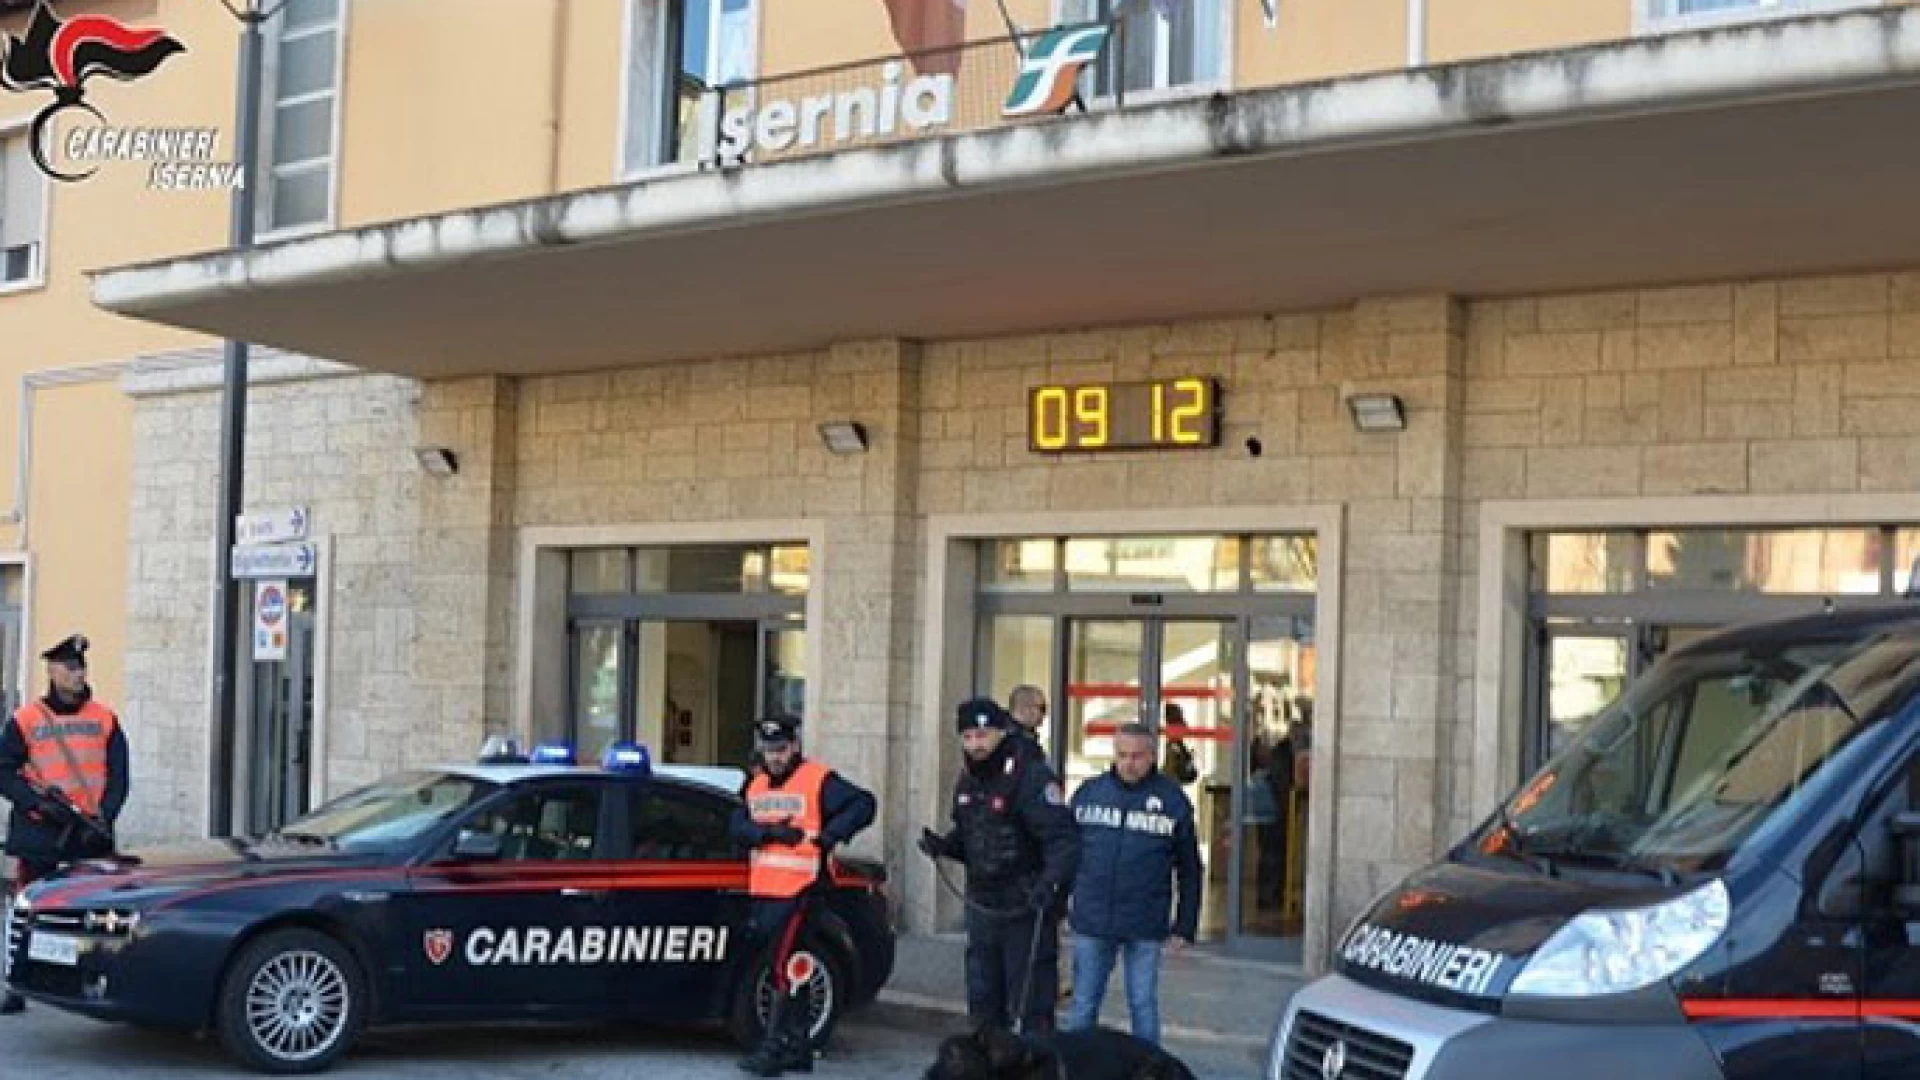 Isernia: Carabinieri in azione, cinque persone denunciate, sottoposte a  sequestro sostanze stupefacenti. Scoperto anche un impianto di videosorveglianza abusivo.